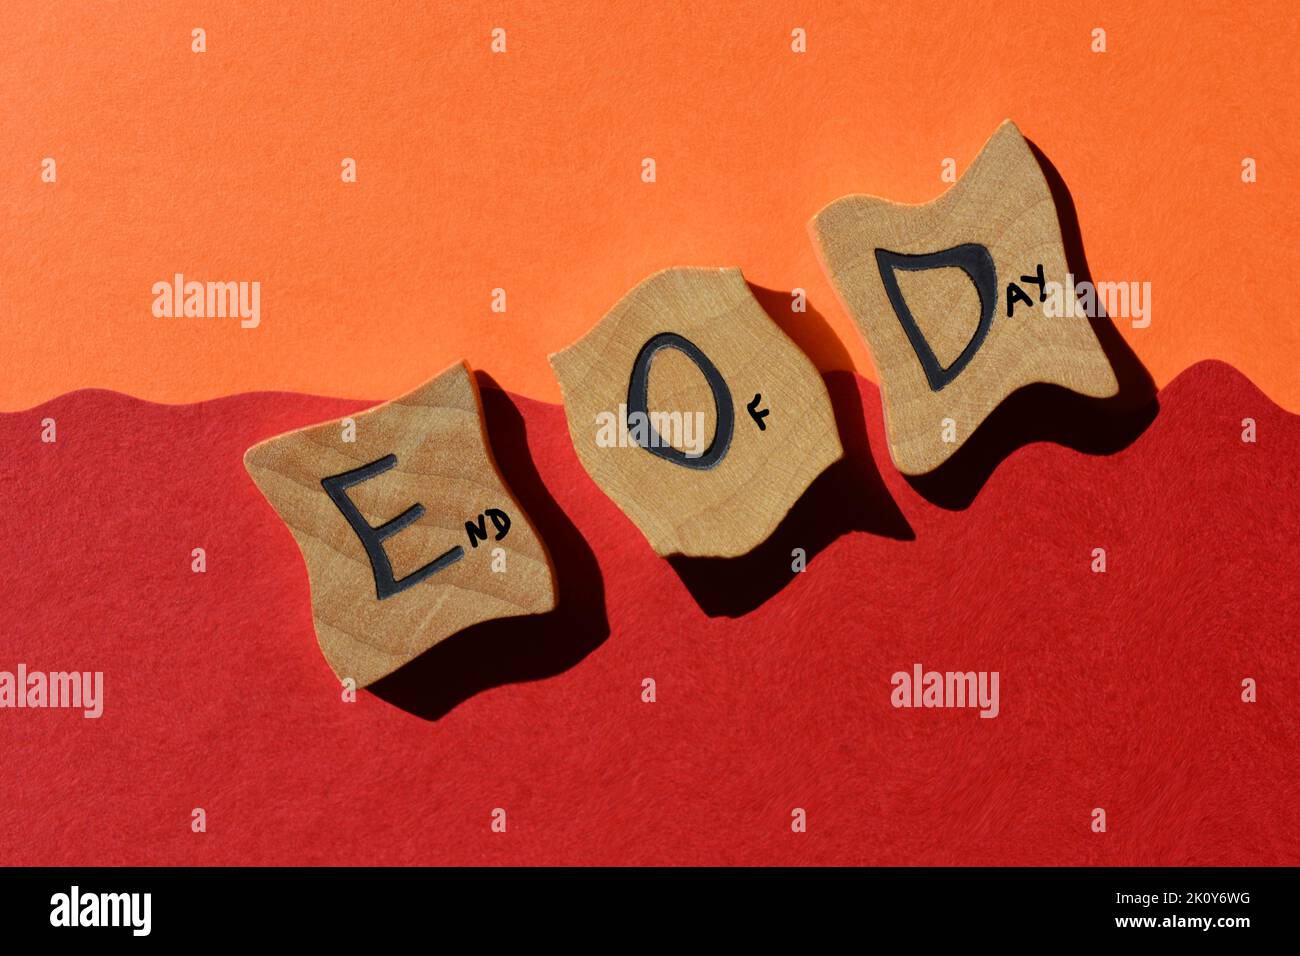 Abreviatura E O D para las palabras Fin del día, letras del alfabeto de madera aisladas sobre fondo rojo y naranja Foto de stock